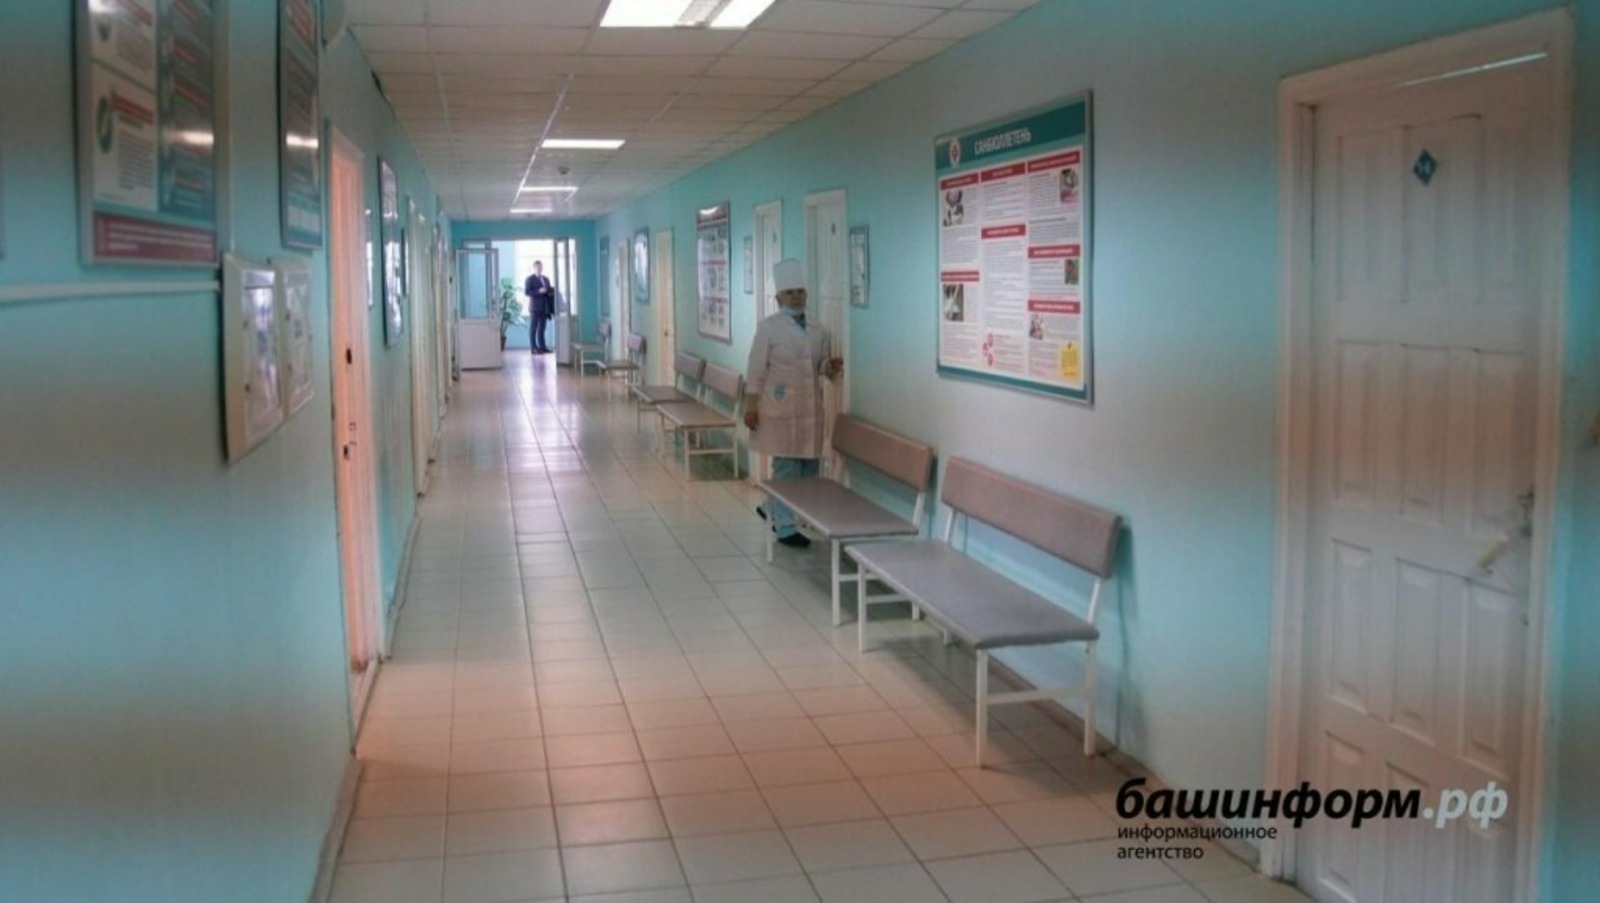 Количество инфицированных коронавирусом в Башкирии увеличилось